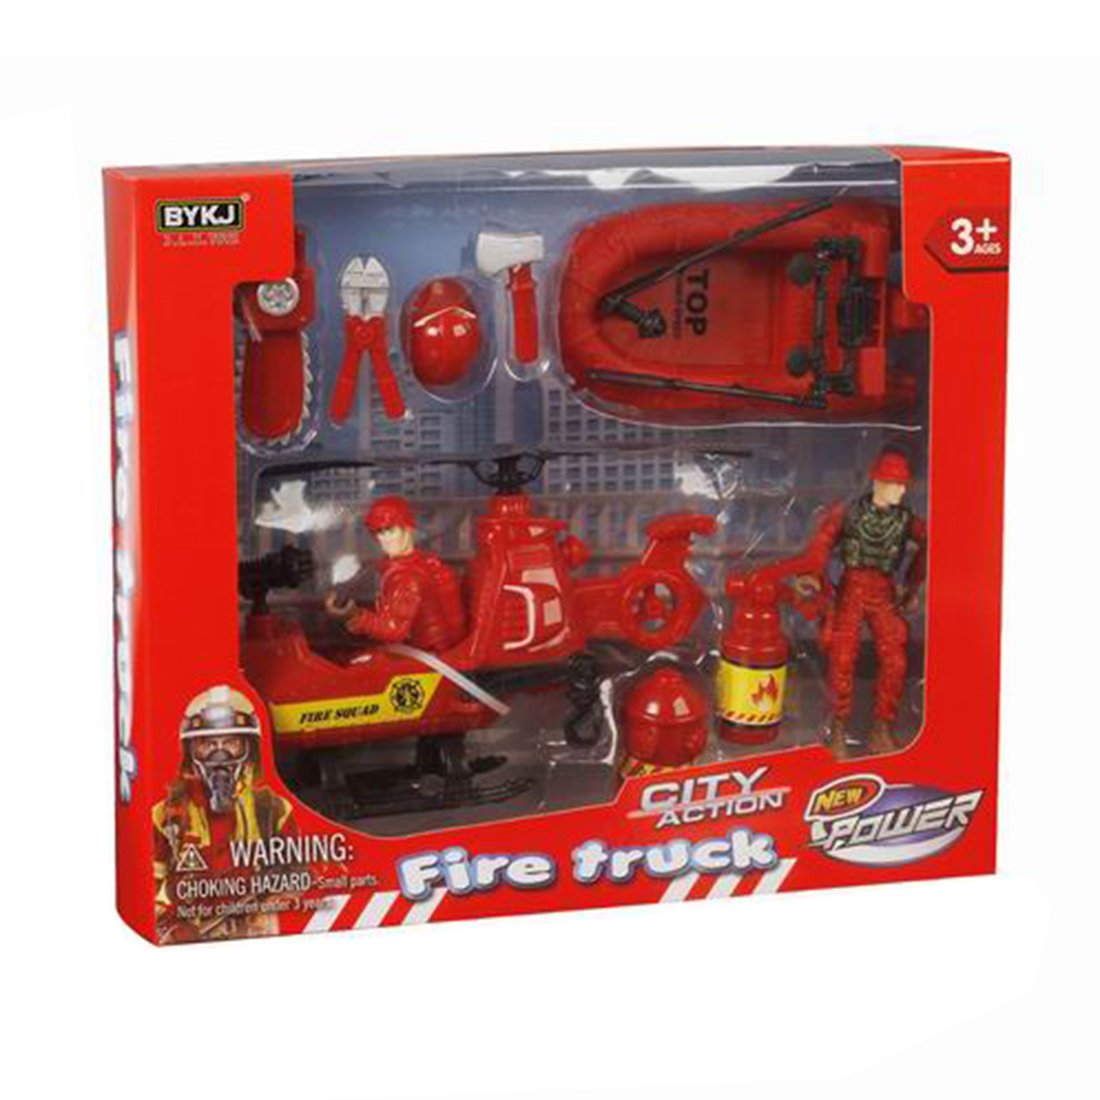 Игровой набор Пожарный, 2 фигурки, 2 транспорта, аксессуары, кор.